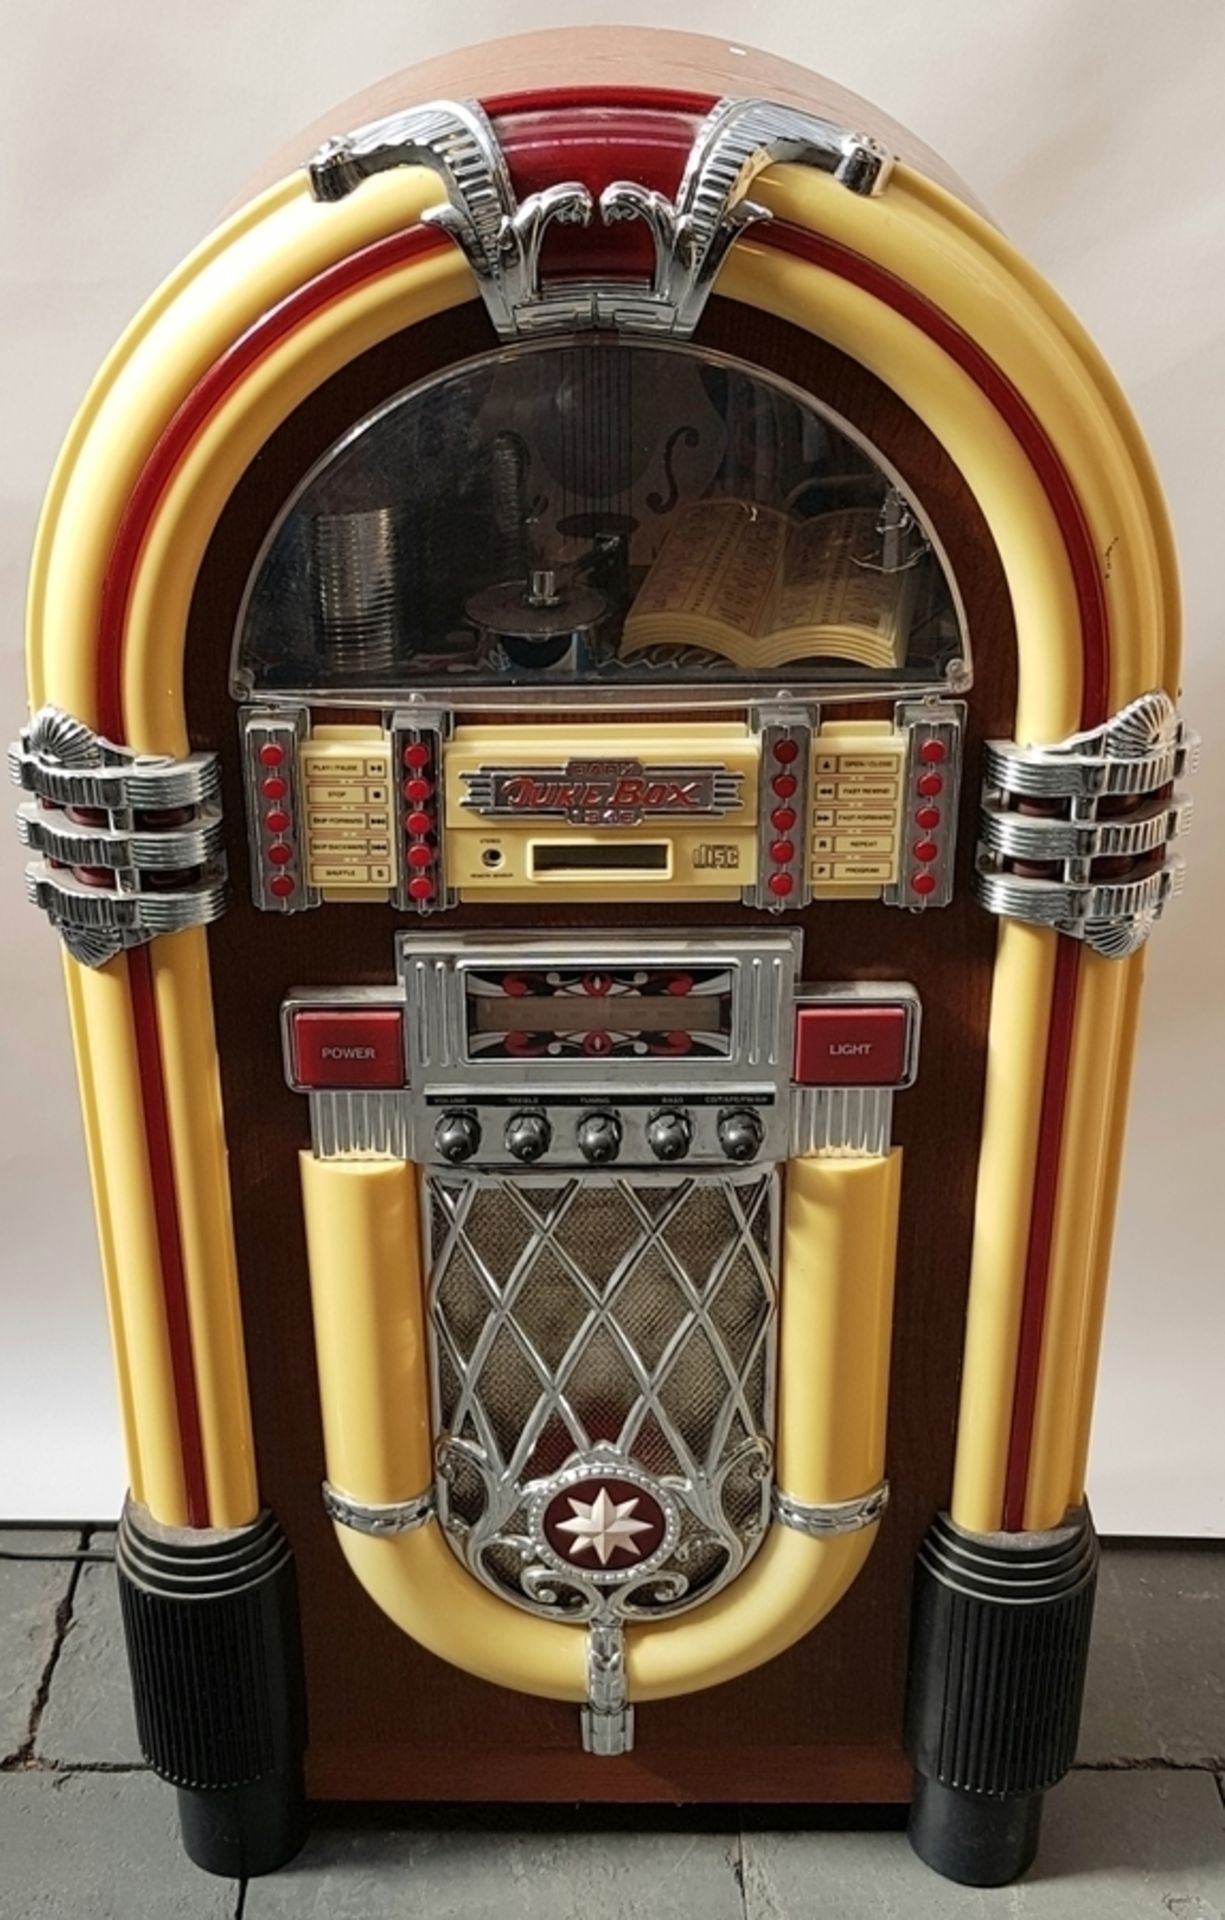 (Curiosa) Jukebox, Wurlitzer Baby Wurlitzer jukebox, replica naar het originele model uit 1946